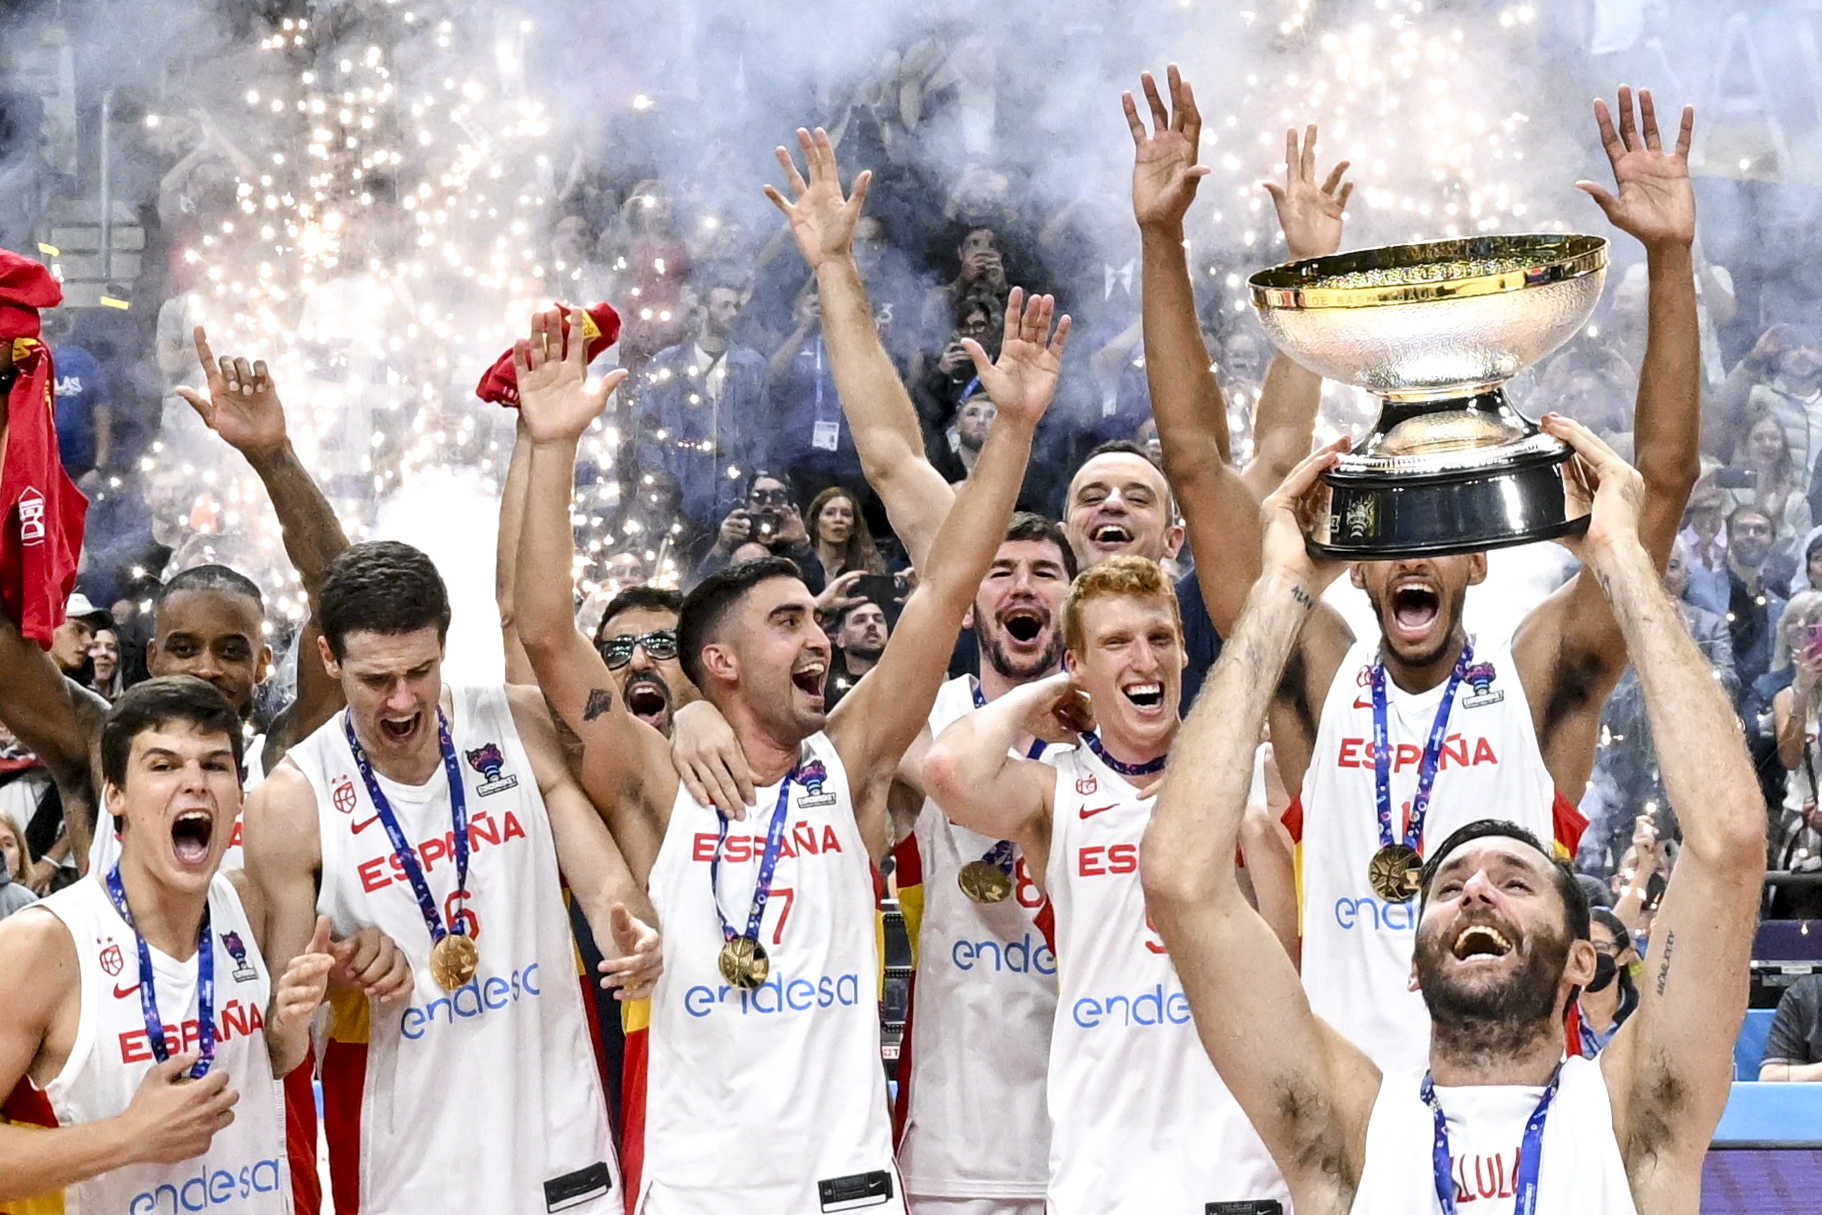 La selección española de baloncesto, con Rudy Fernández alzando el trofeo, celebran la victoria en el Eurobasket 2022.